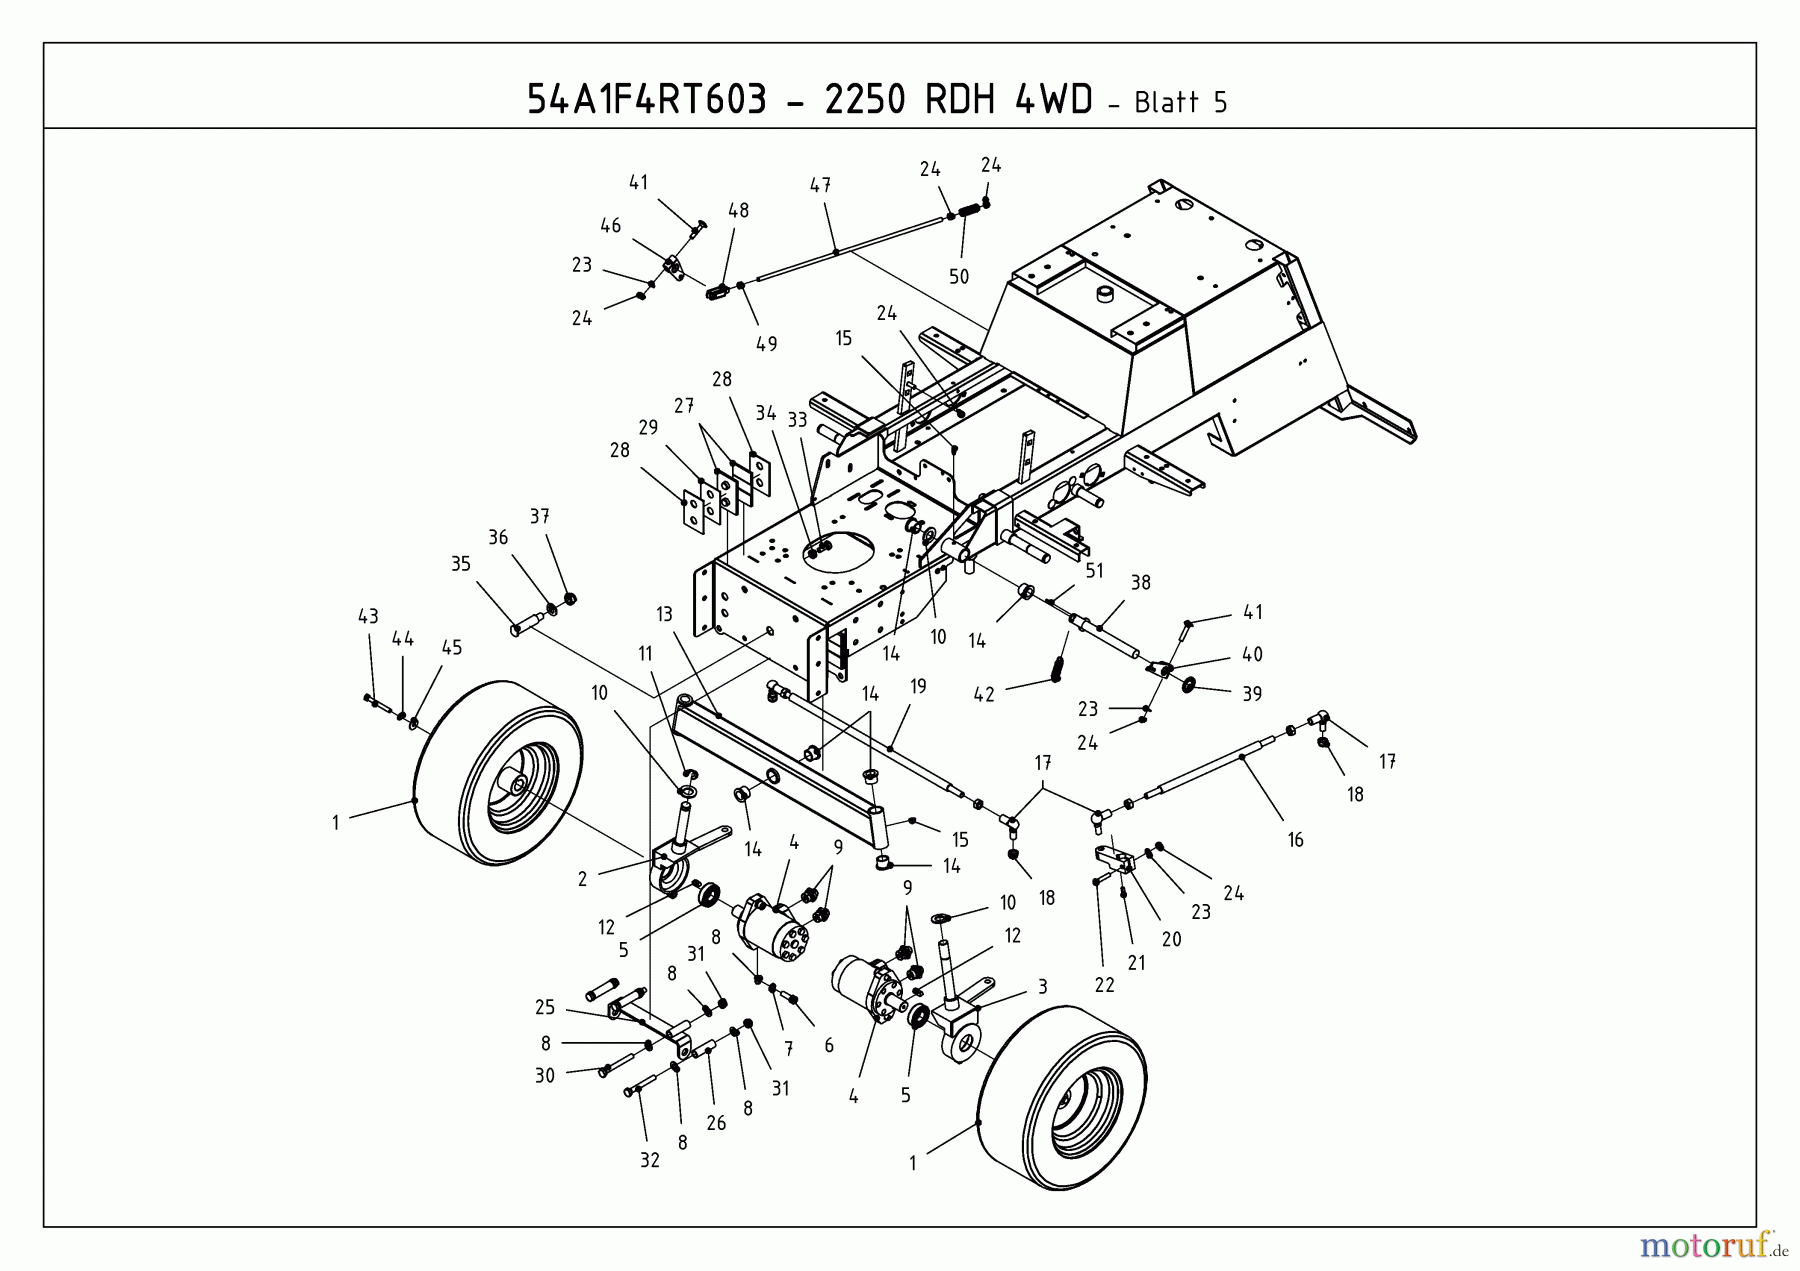  Massey Ferguson Kompakttraktoren MF 21-25 RD 4 WD 54A1F4RT695  (2010) Räder vorne, Vorderachse